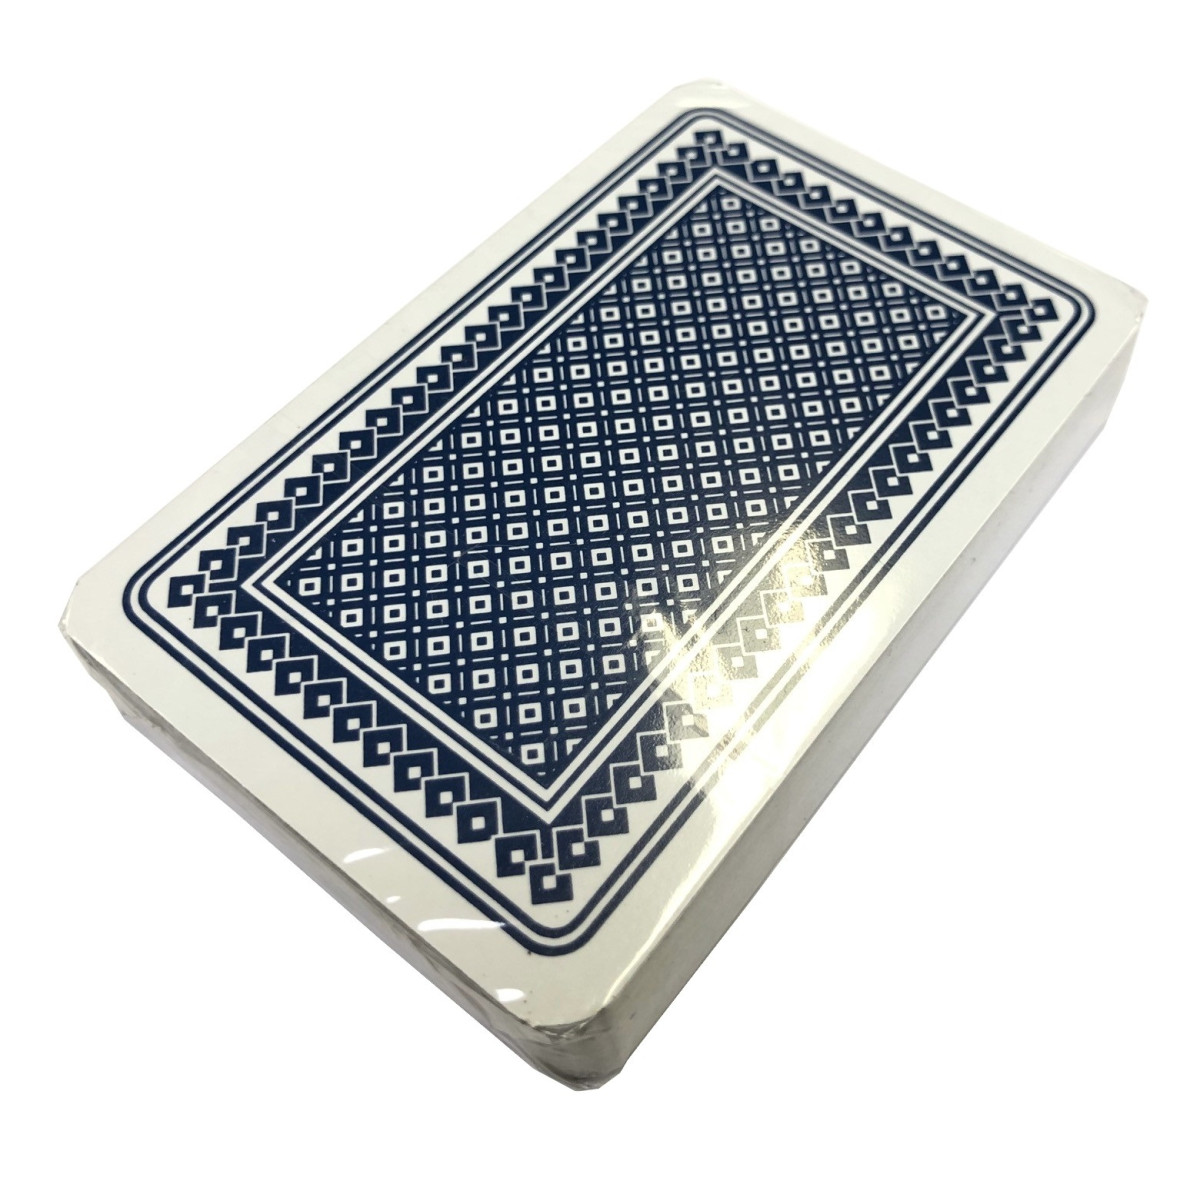 Kaartspel Carlton 52 kaarten - frans blauw kopen op Amusement.be